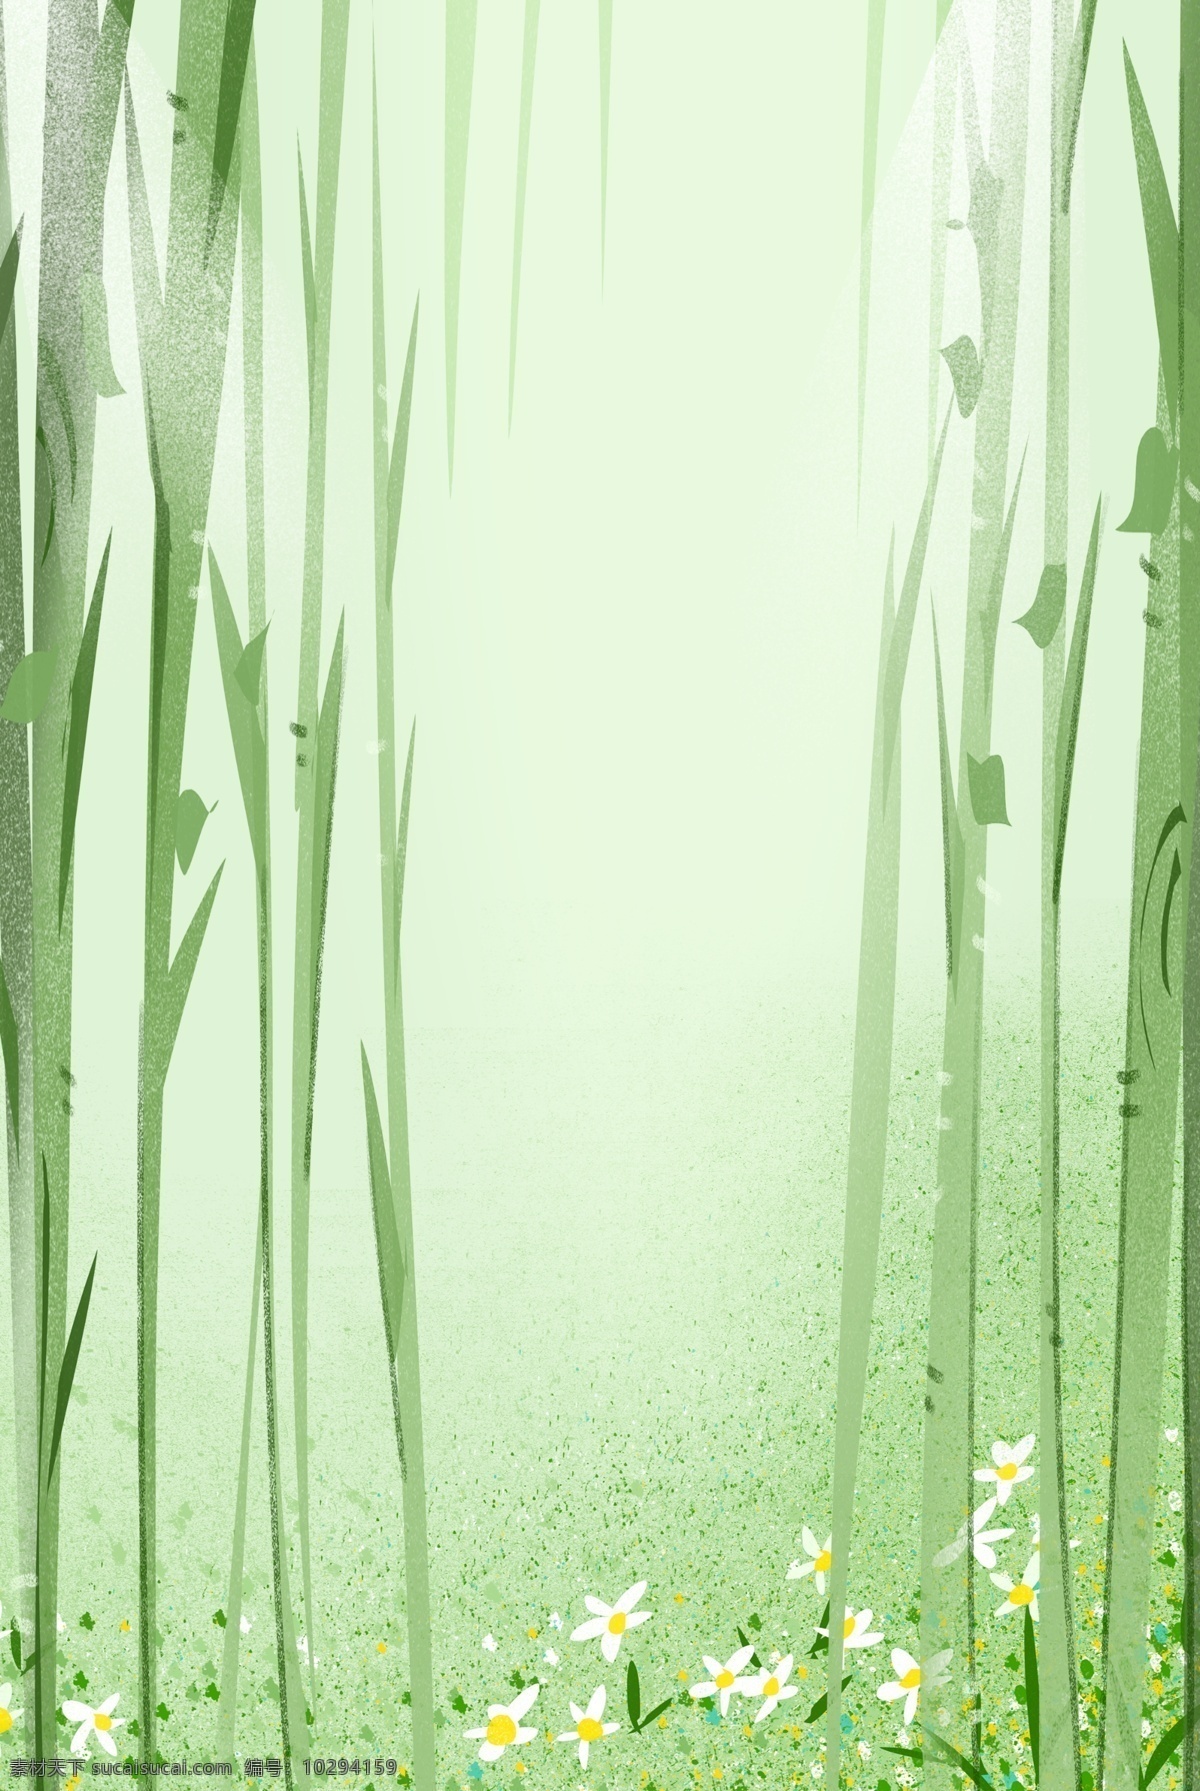 清新 手绘 夏日 森林 插画 背景 夏日背景 森林插画背景 绿色背景 通用背景 手绘背景